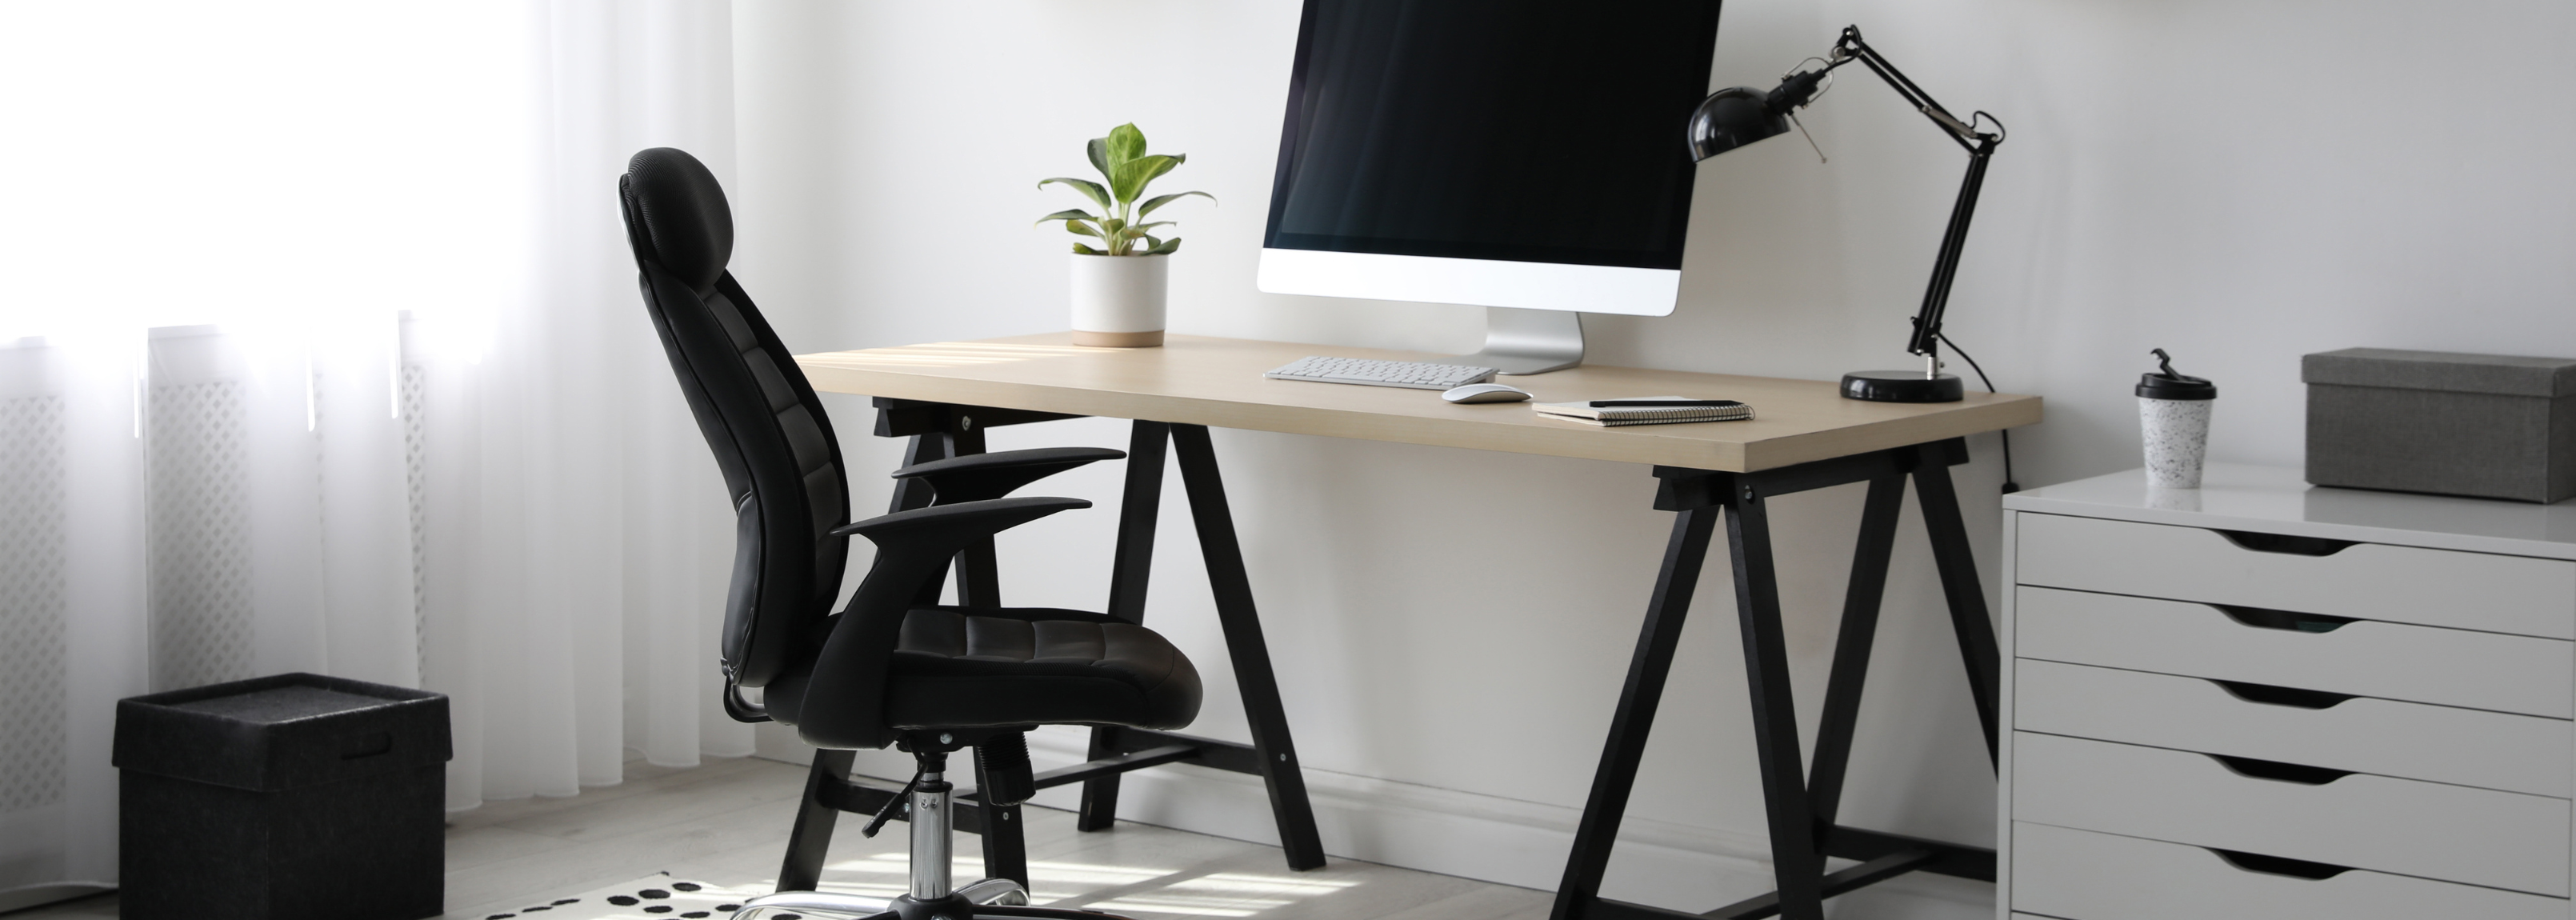 Home Office Schreibtisch - bequem und effizient!